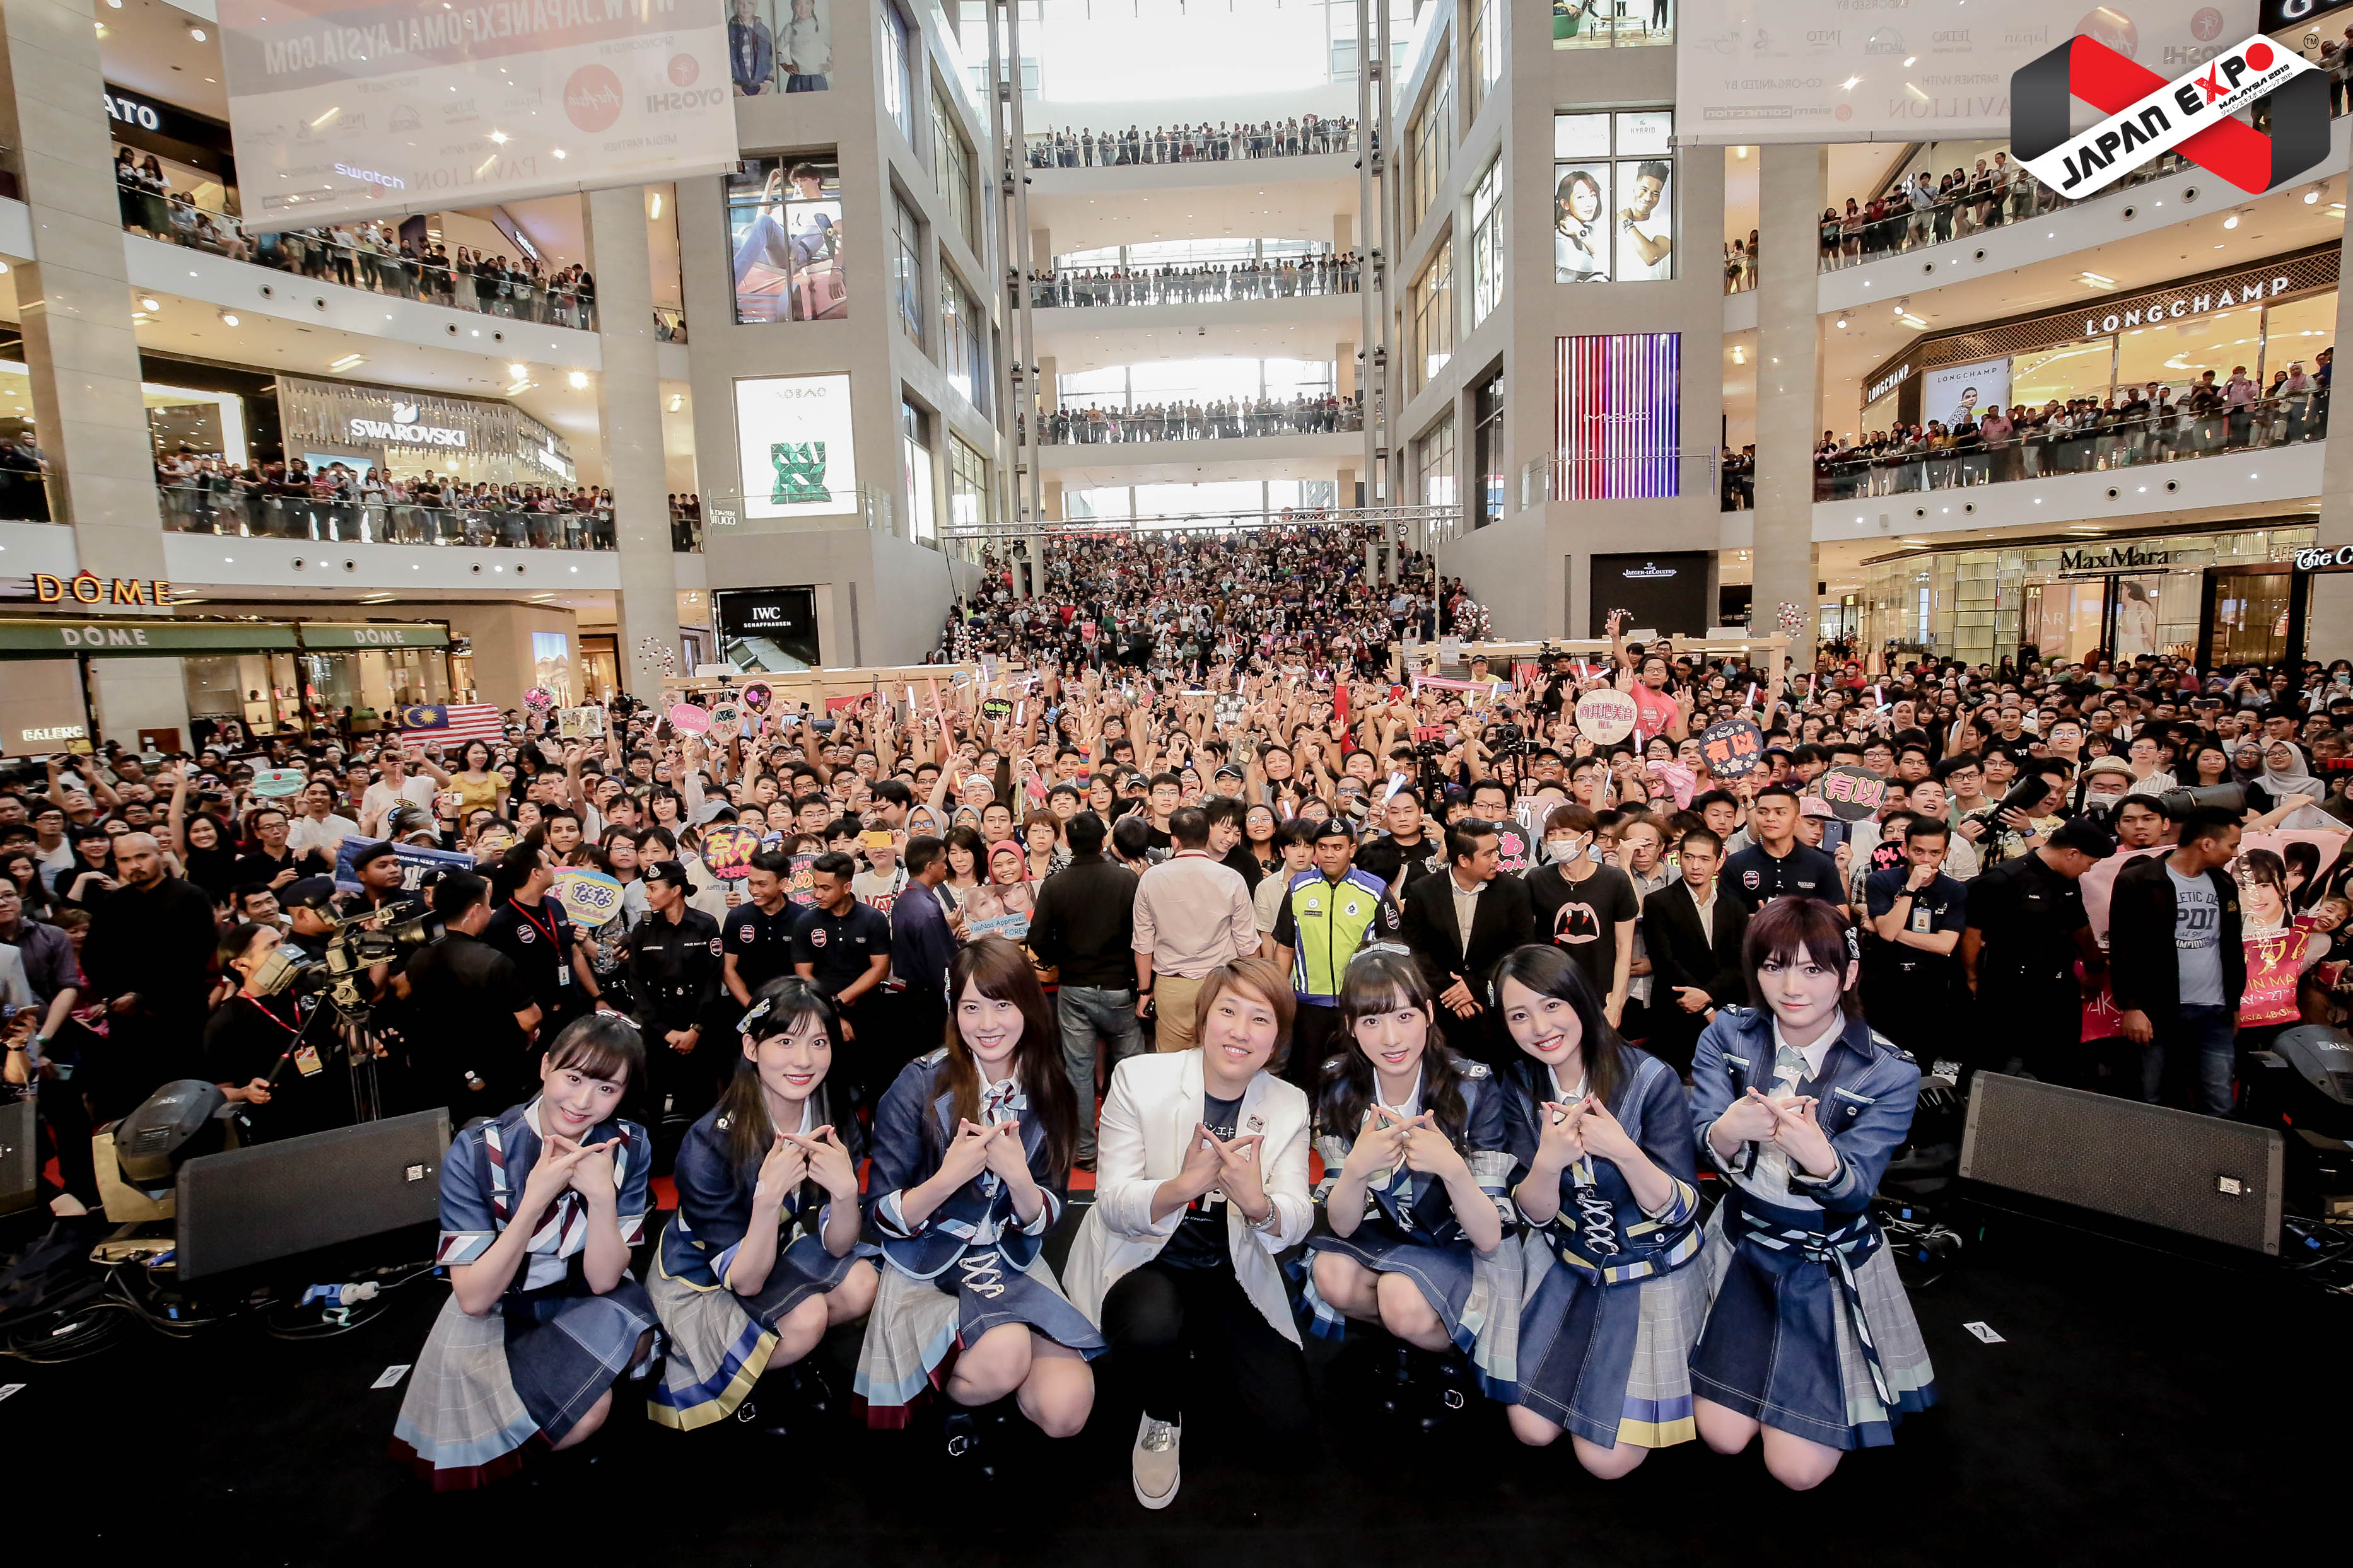 去年的大马日本博览会邀请偶像女团AKB48出席。（图/G-Yu Creative提供）